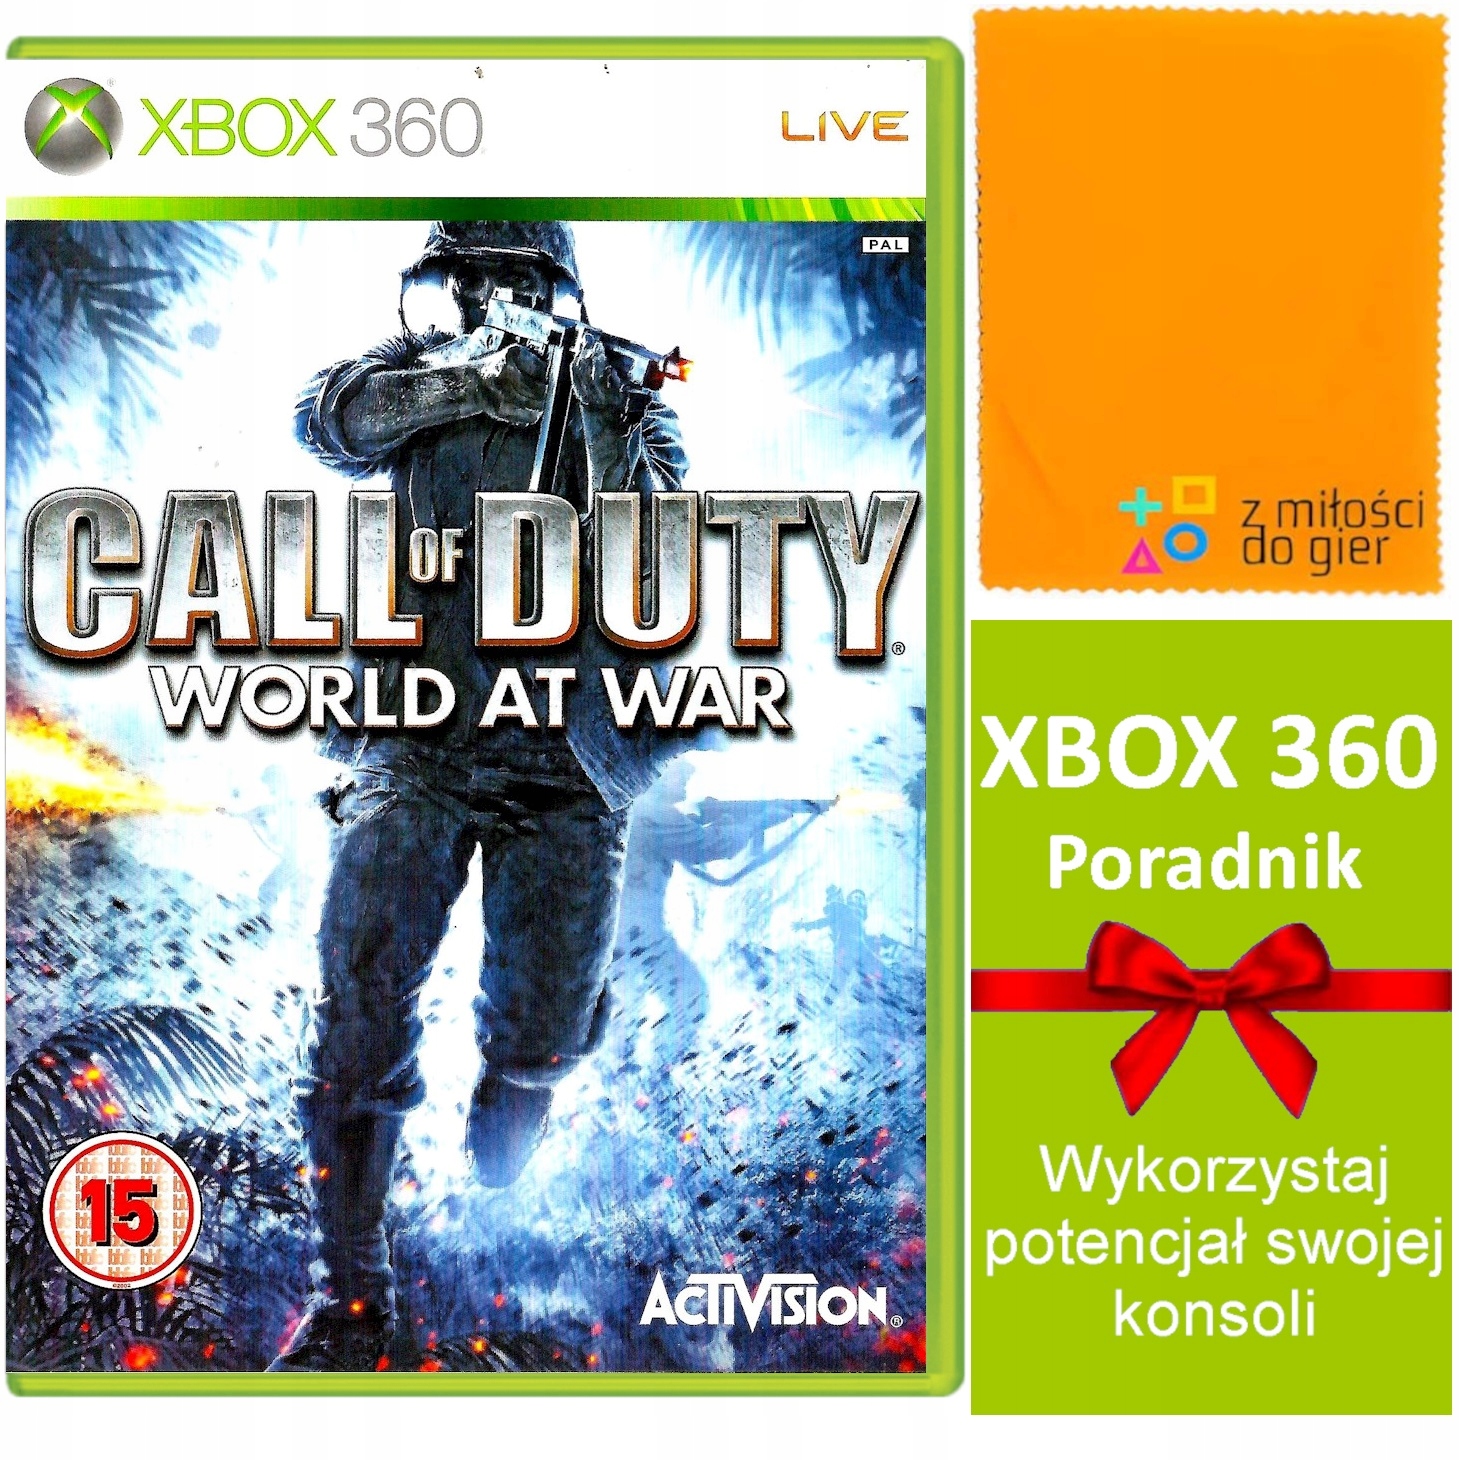 gra akcji XBOX 360 COD CALL OF DUTY WORLD AT WAR cały ŚWIAT w OGNIU WOJNY